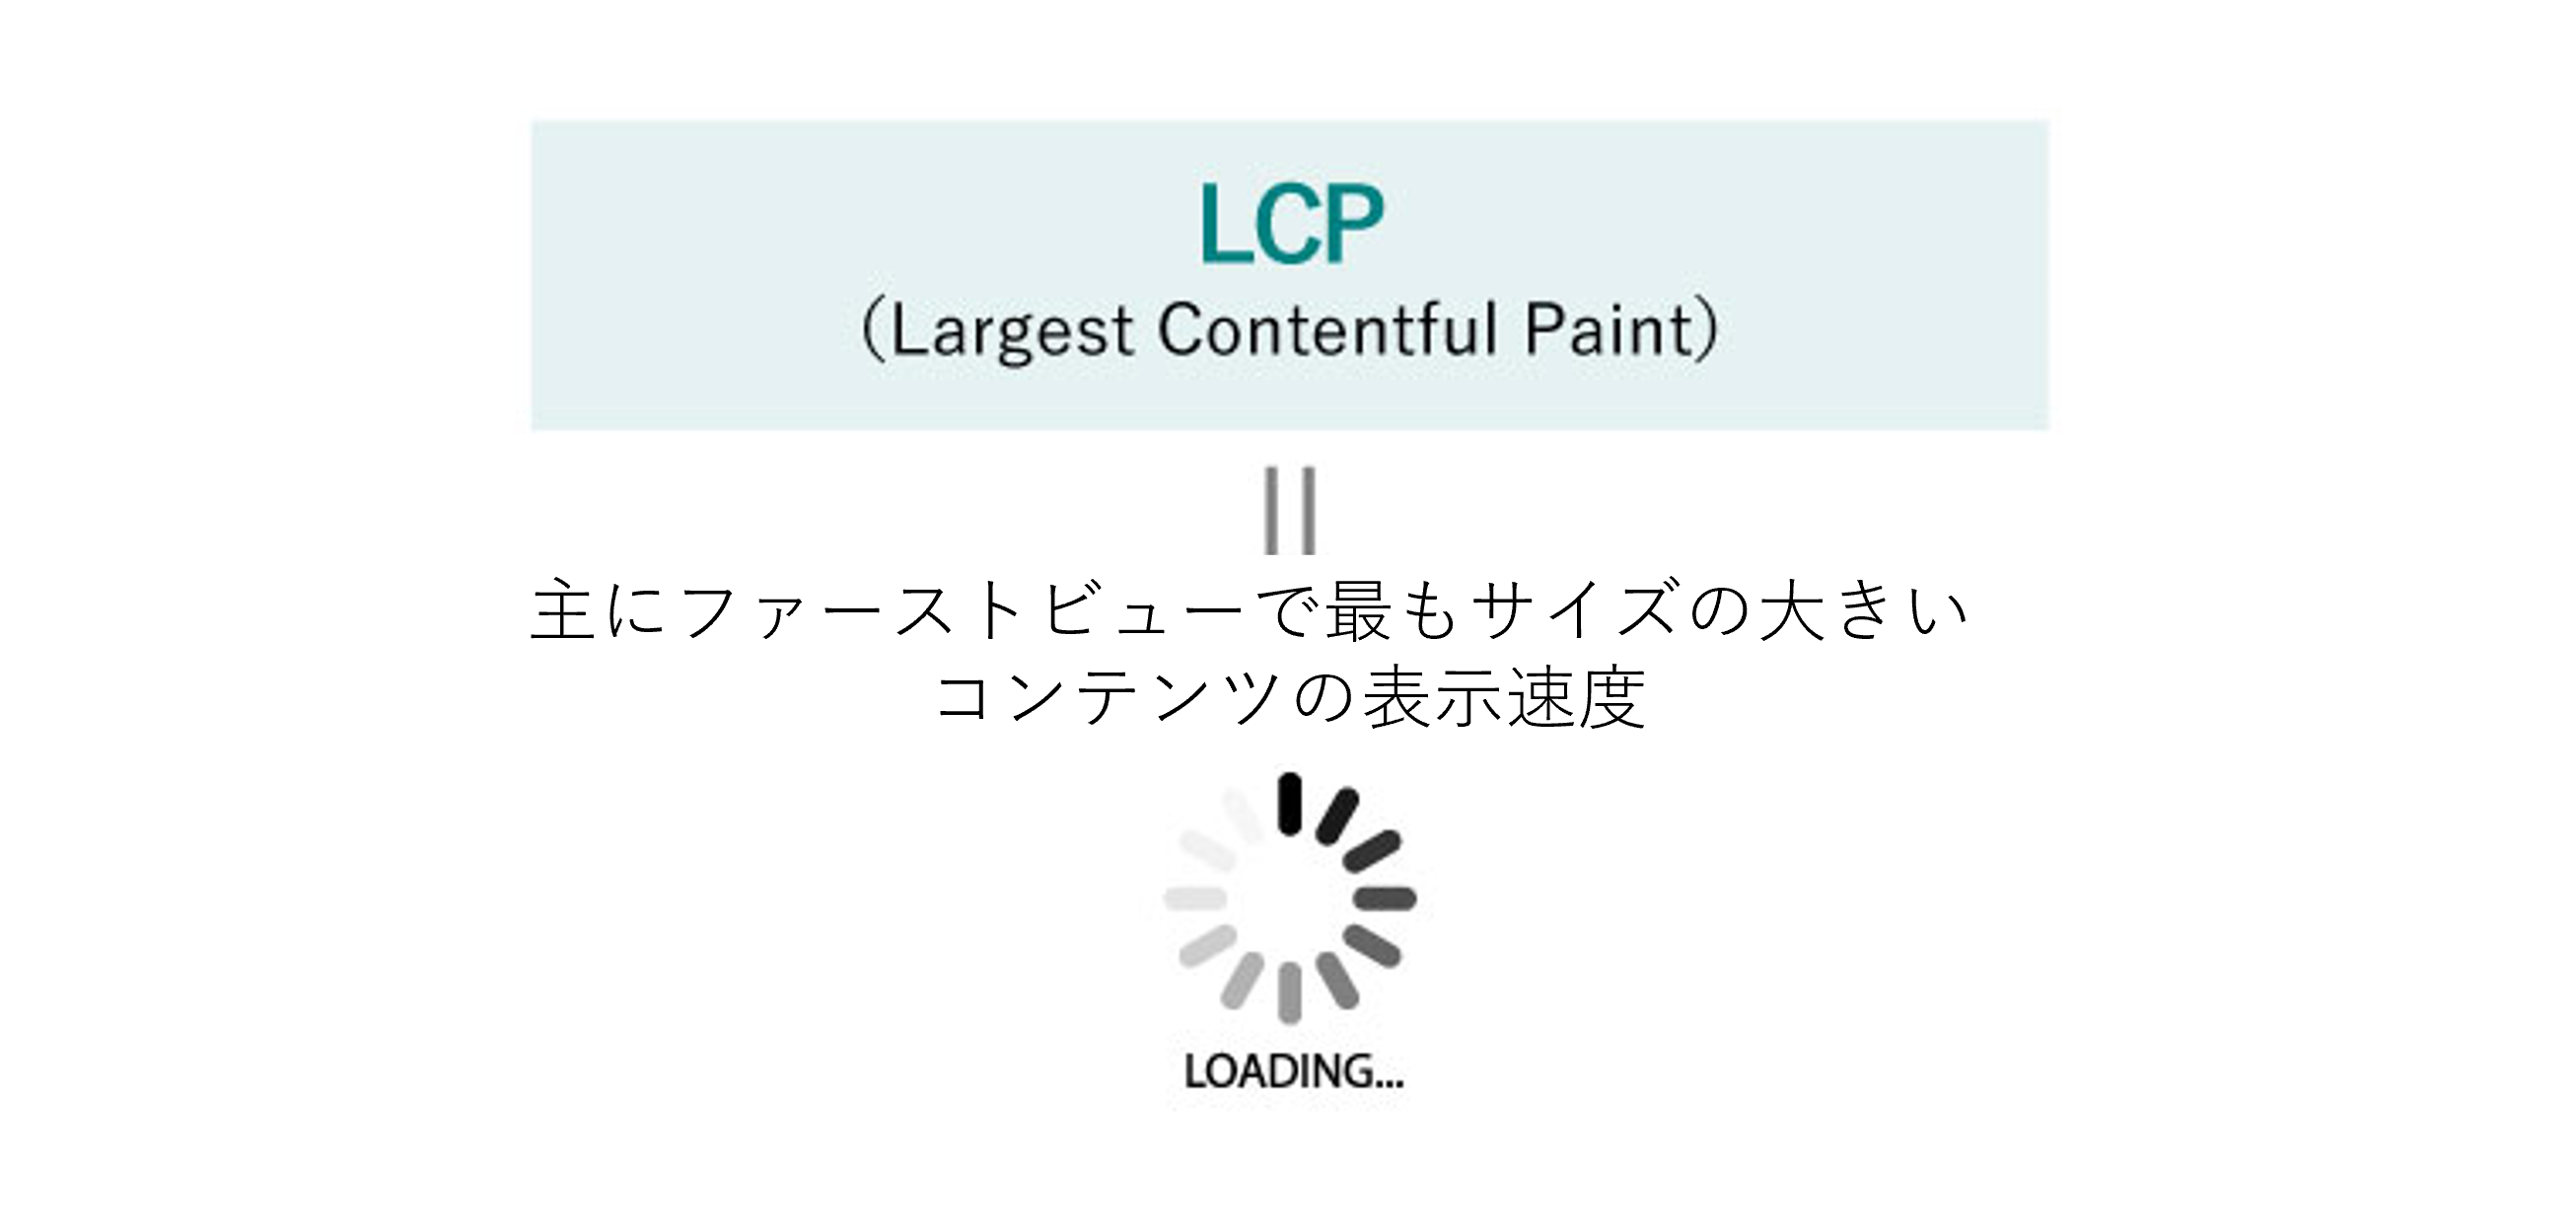 LCPとは主にファーストビューで最もサイズの大きい コンテンツの表示速度